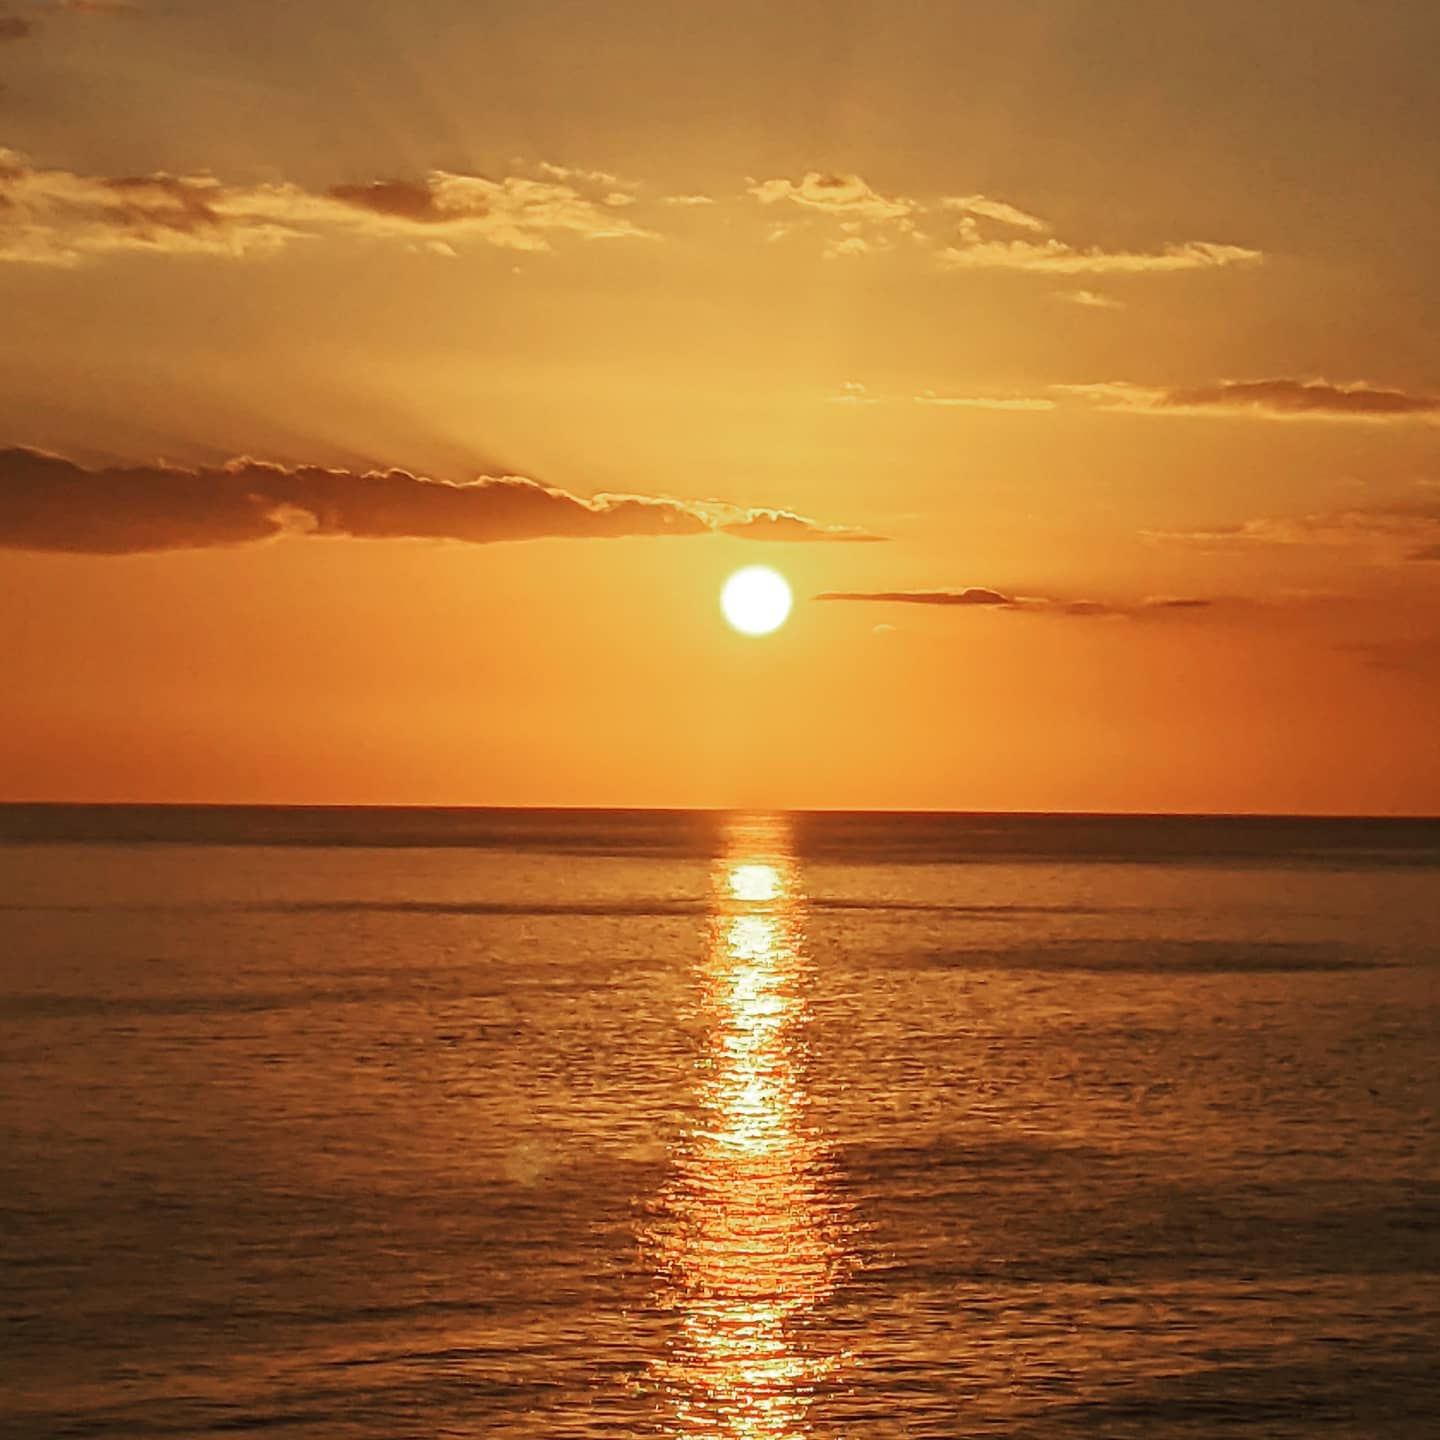 sunset at Panama City Beach, Florida